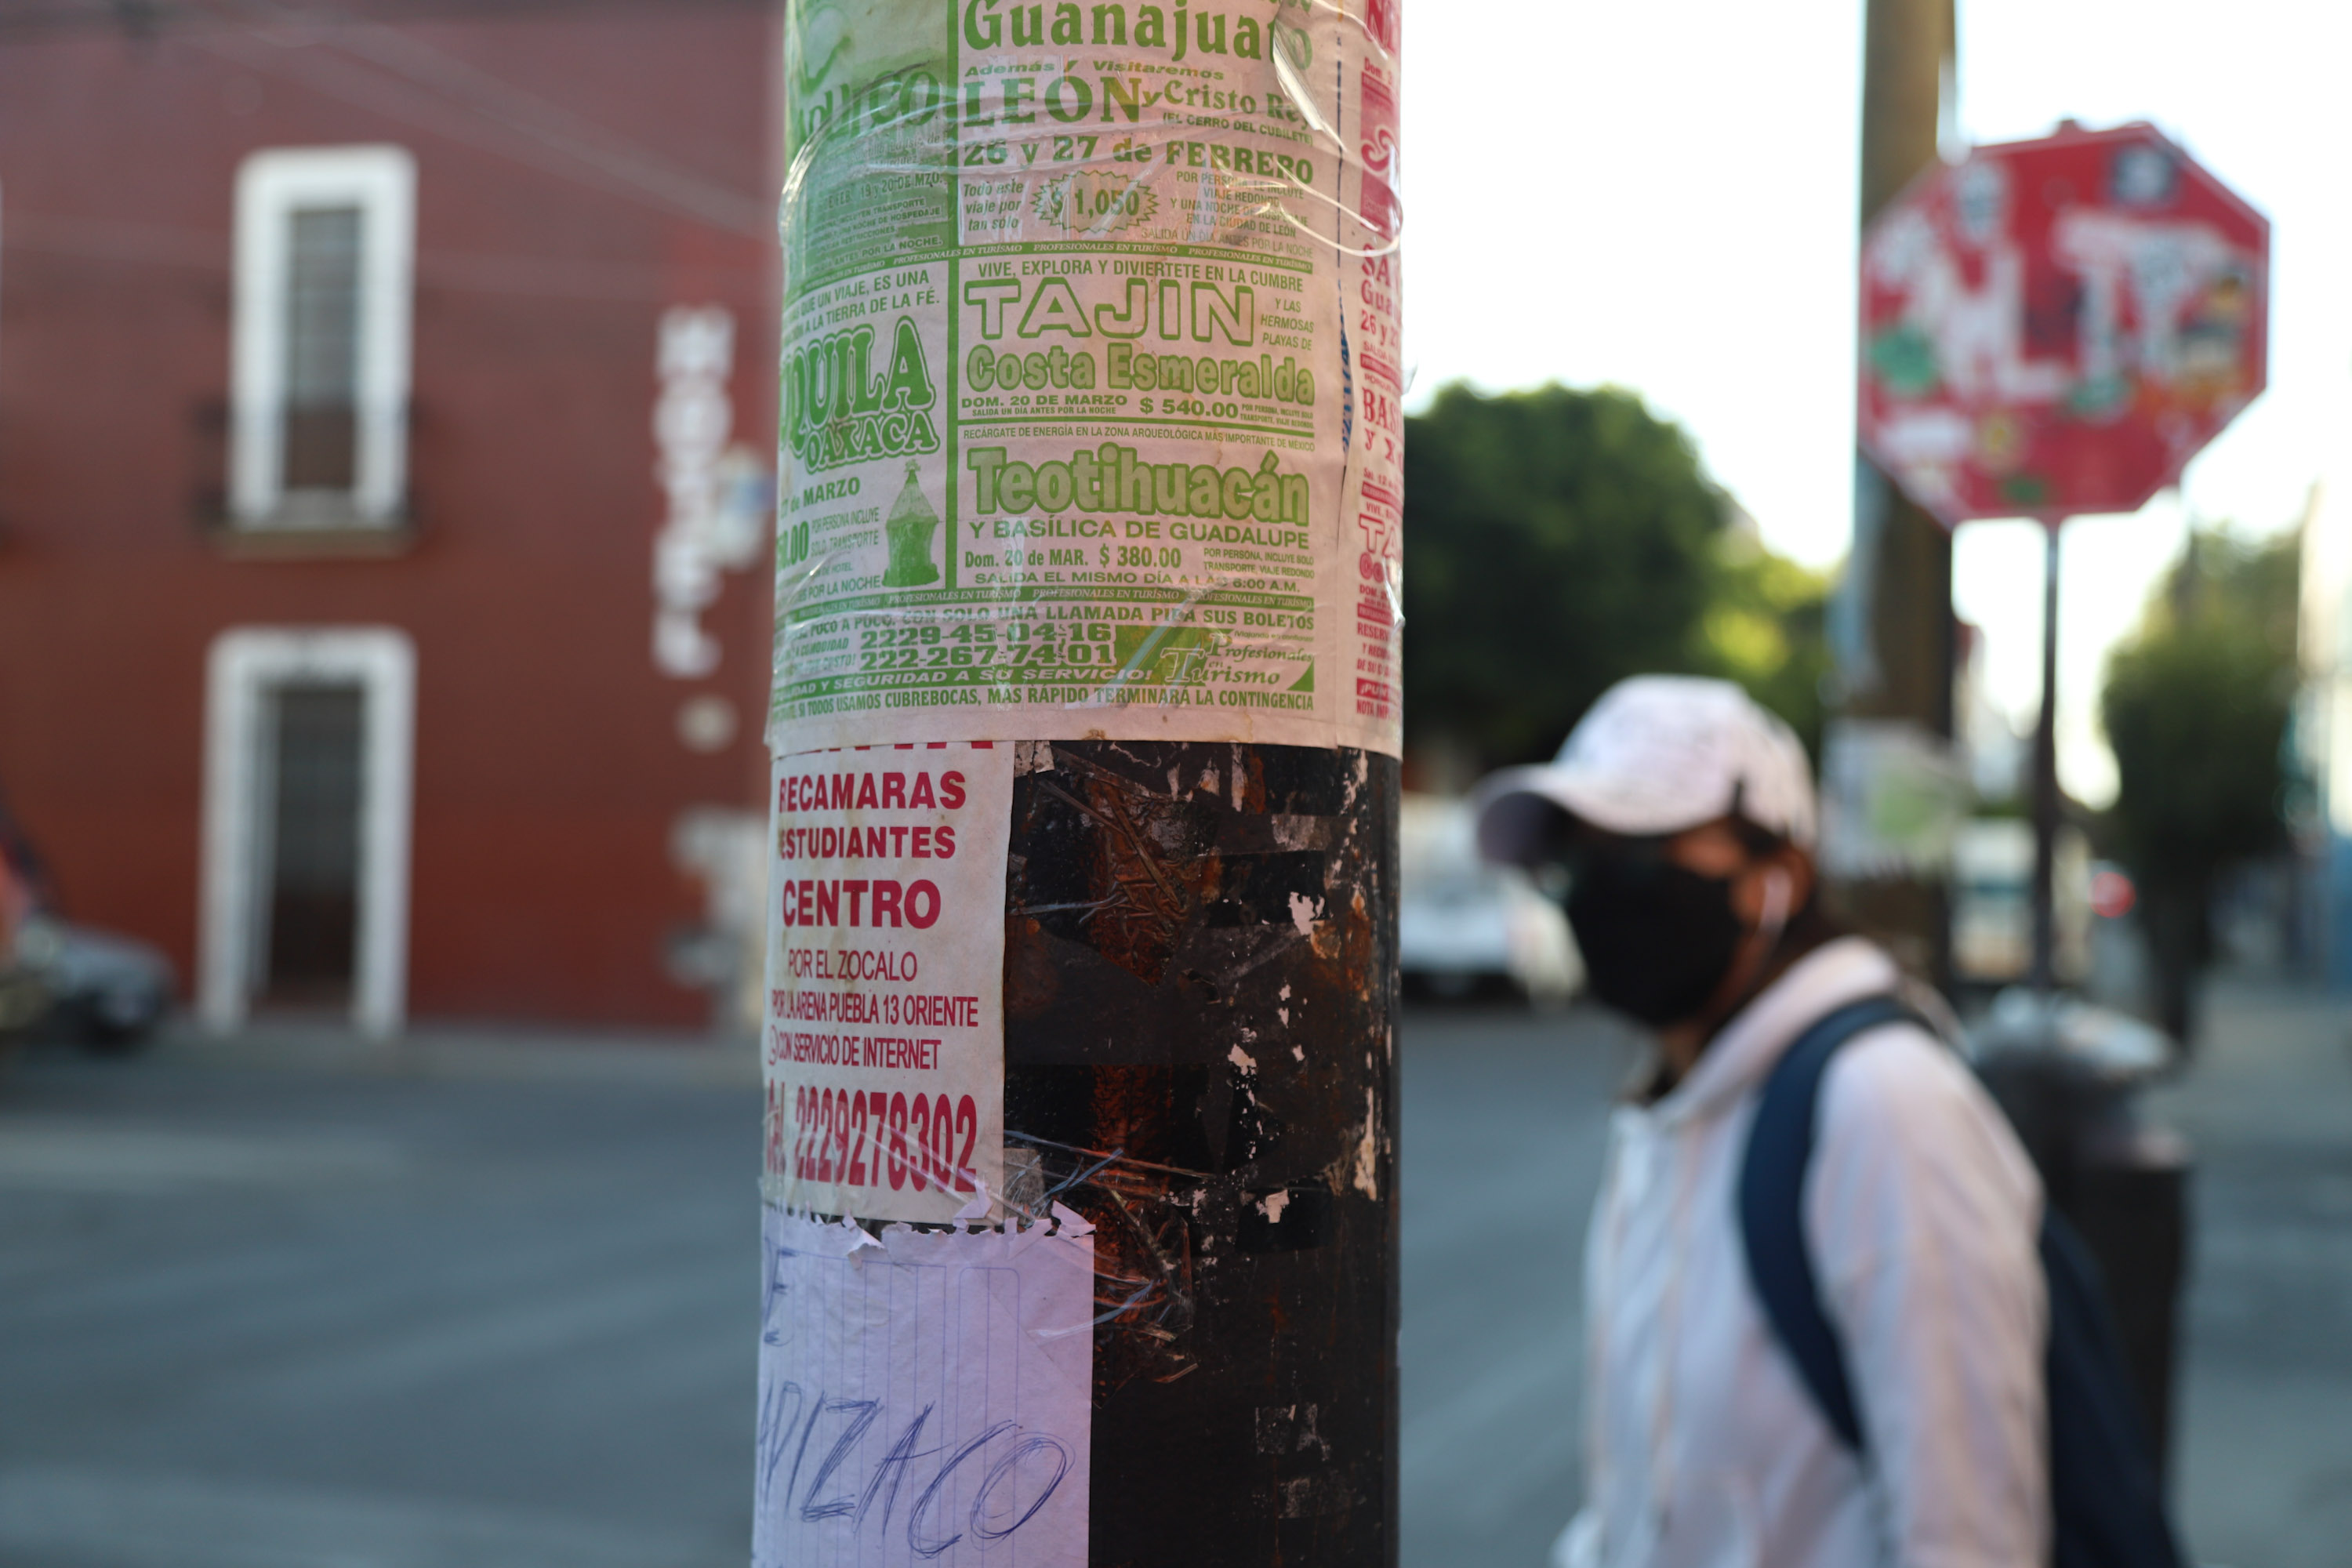 Postes en la ciudad de Puebla se inundan con publicidad